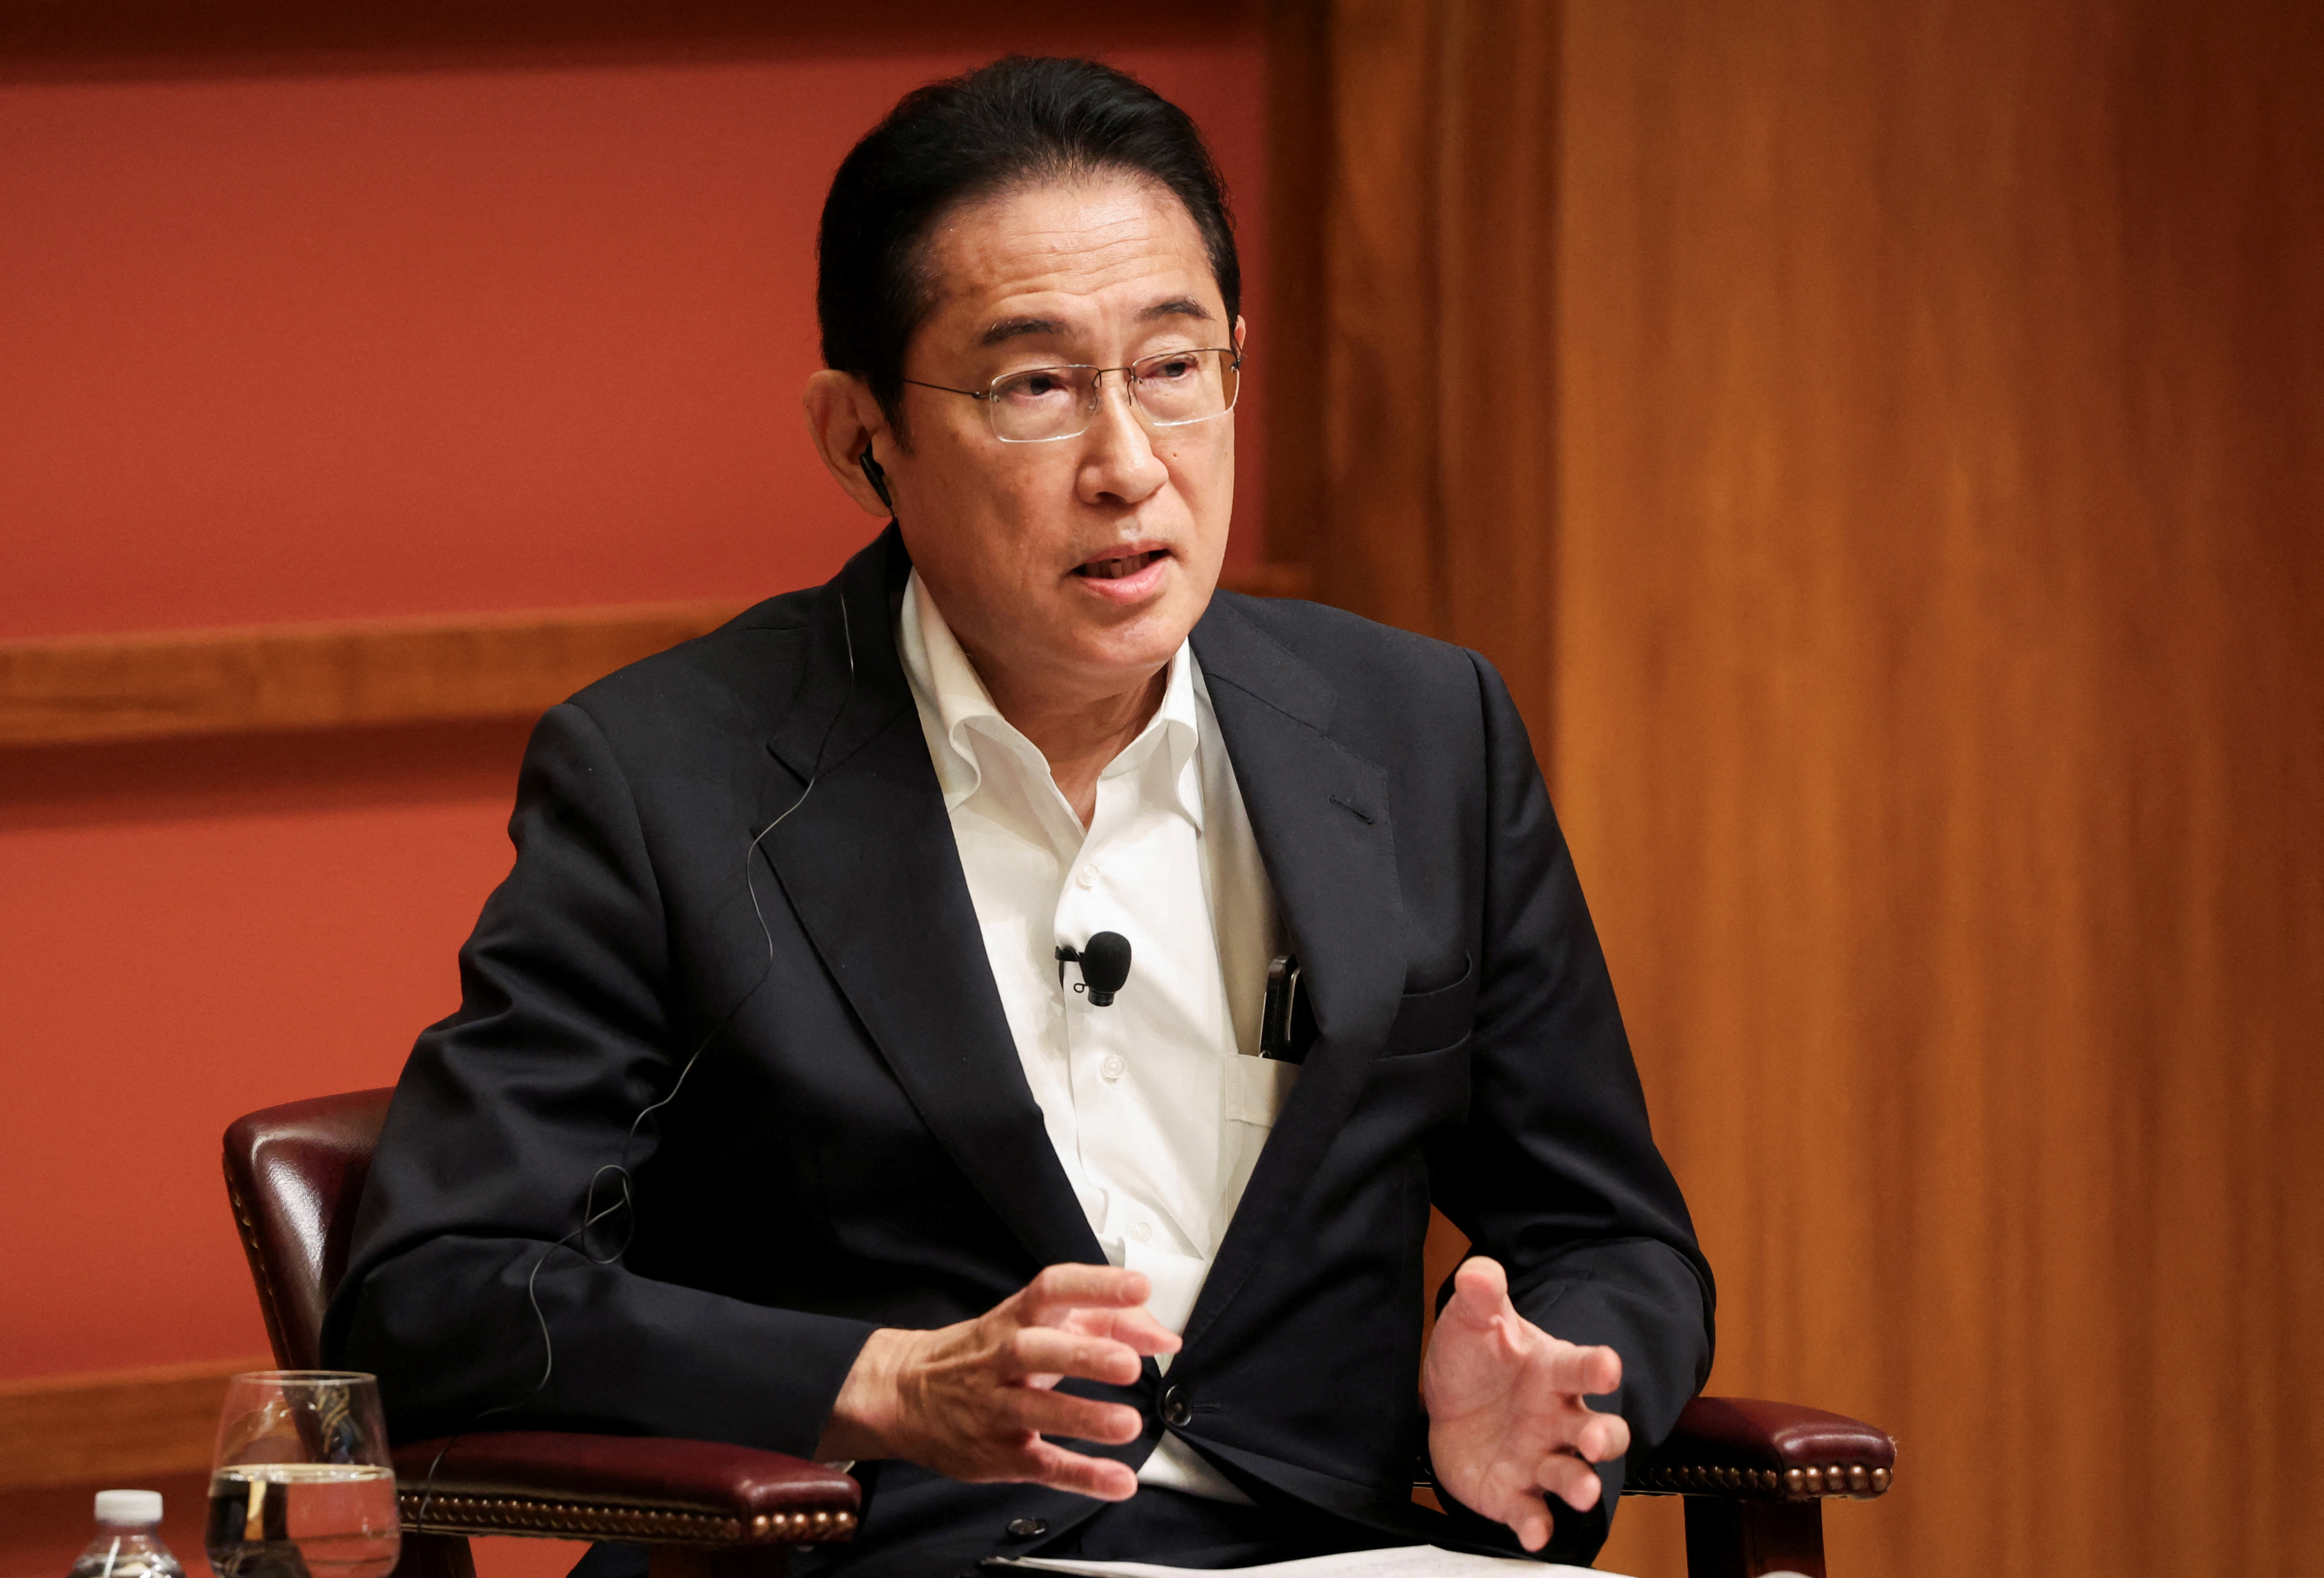 岸田首相が派閥離脱を表明、政治への信頼回復へ「先頭に立つ」